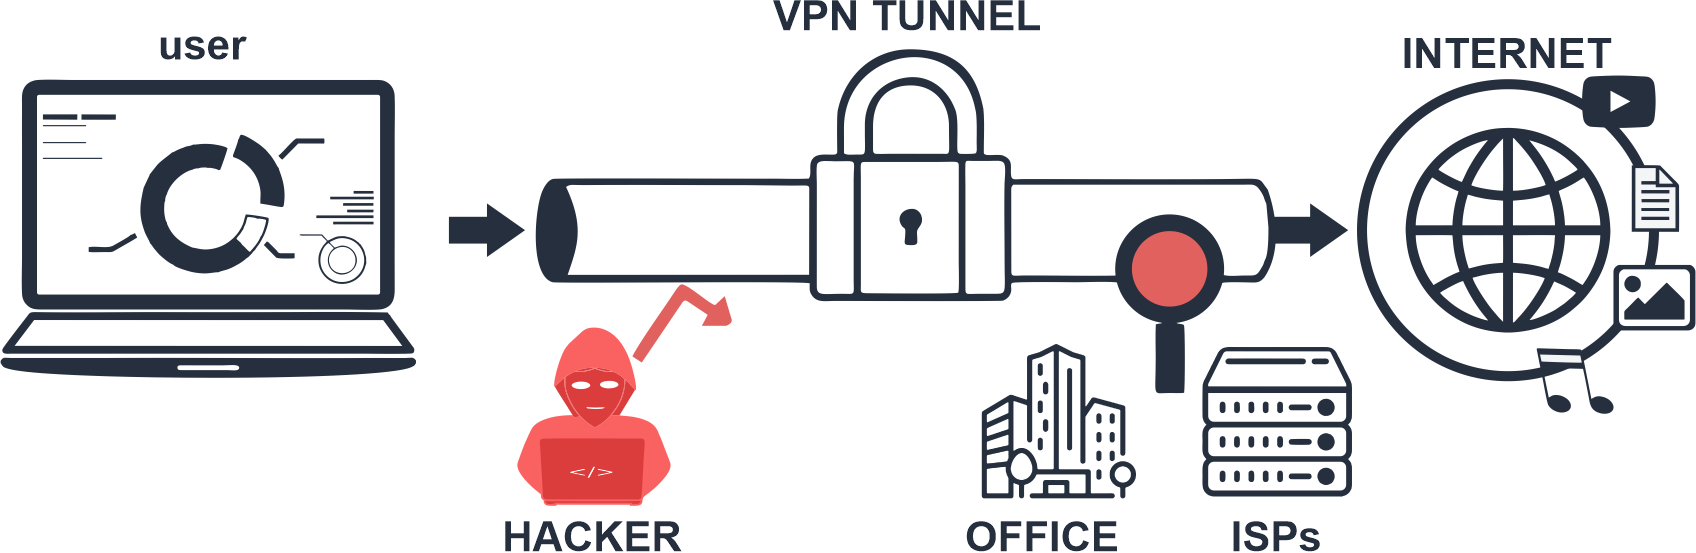 VPN-Working